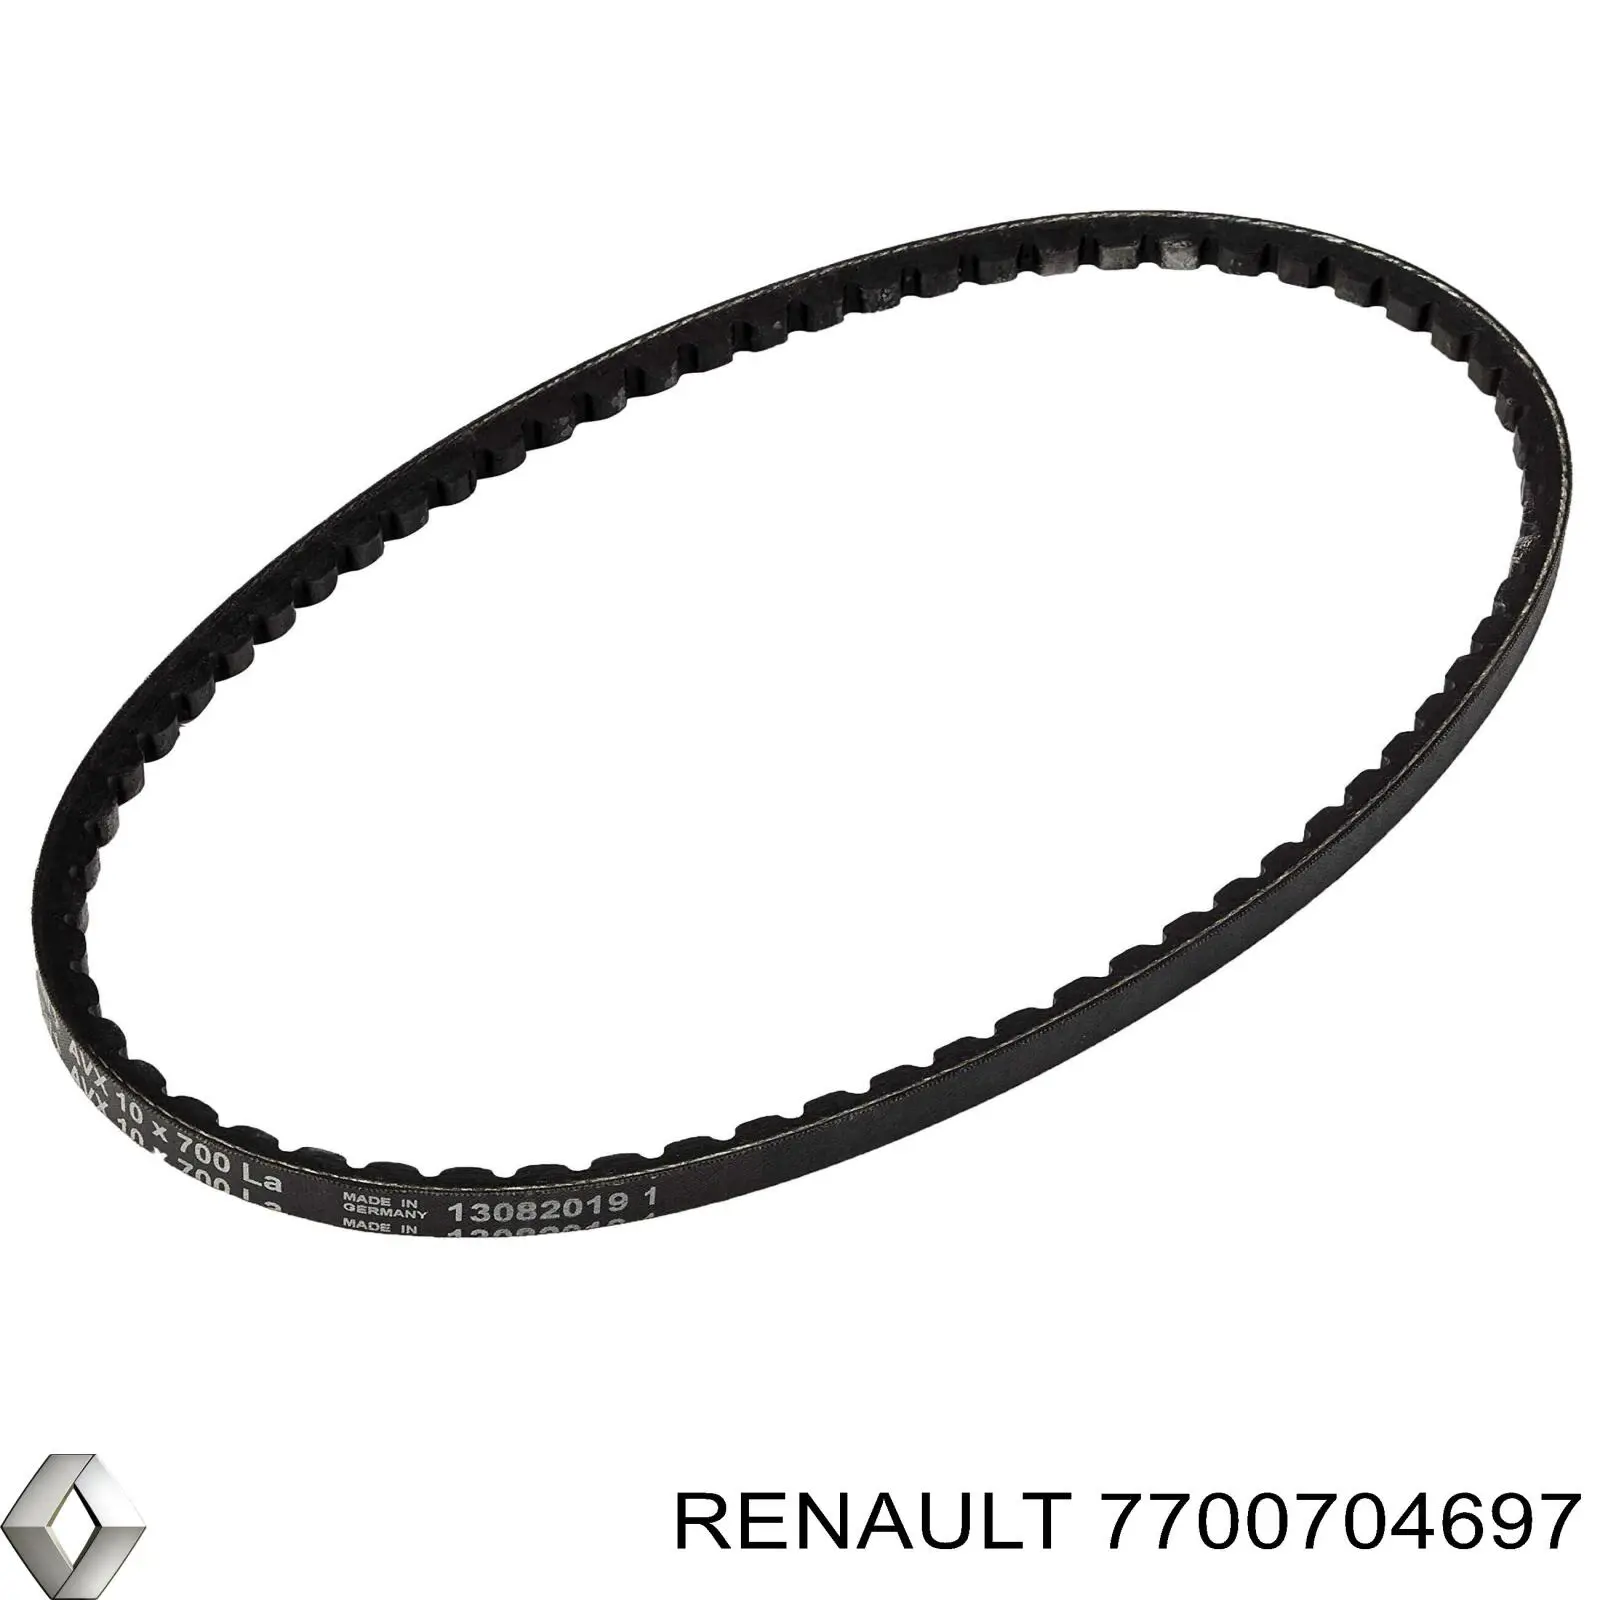 7700704697 Renault (RVI) correa trapezoidal